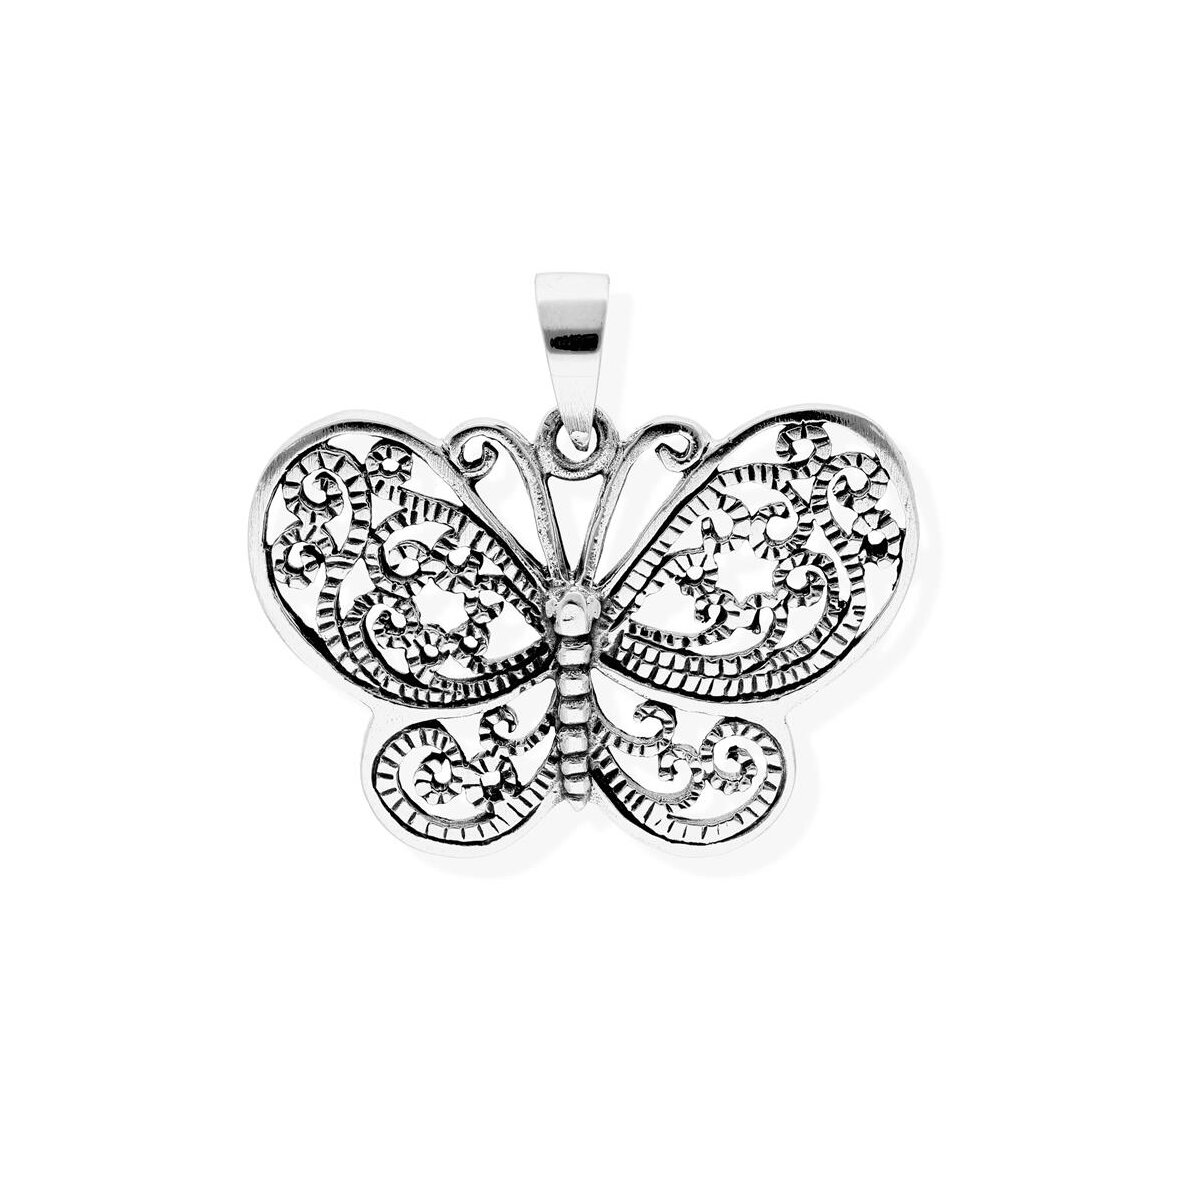 aus Amulett viTalisman Silber 925 geschwärzt Kettenanhänger Sterling symbolisch Unisex 36059 Schmetterling